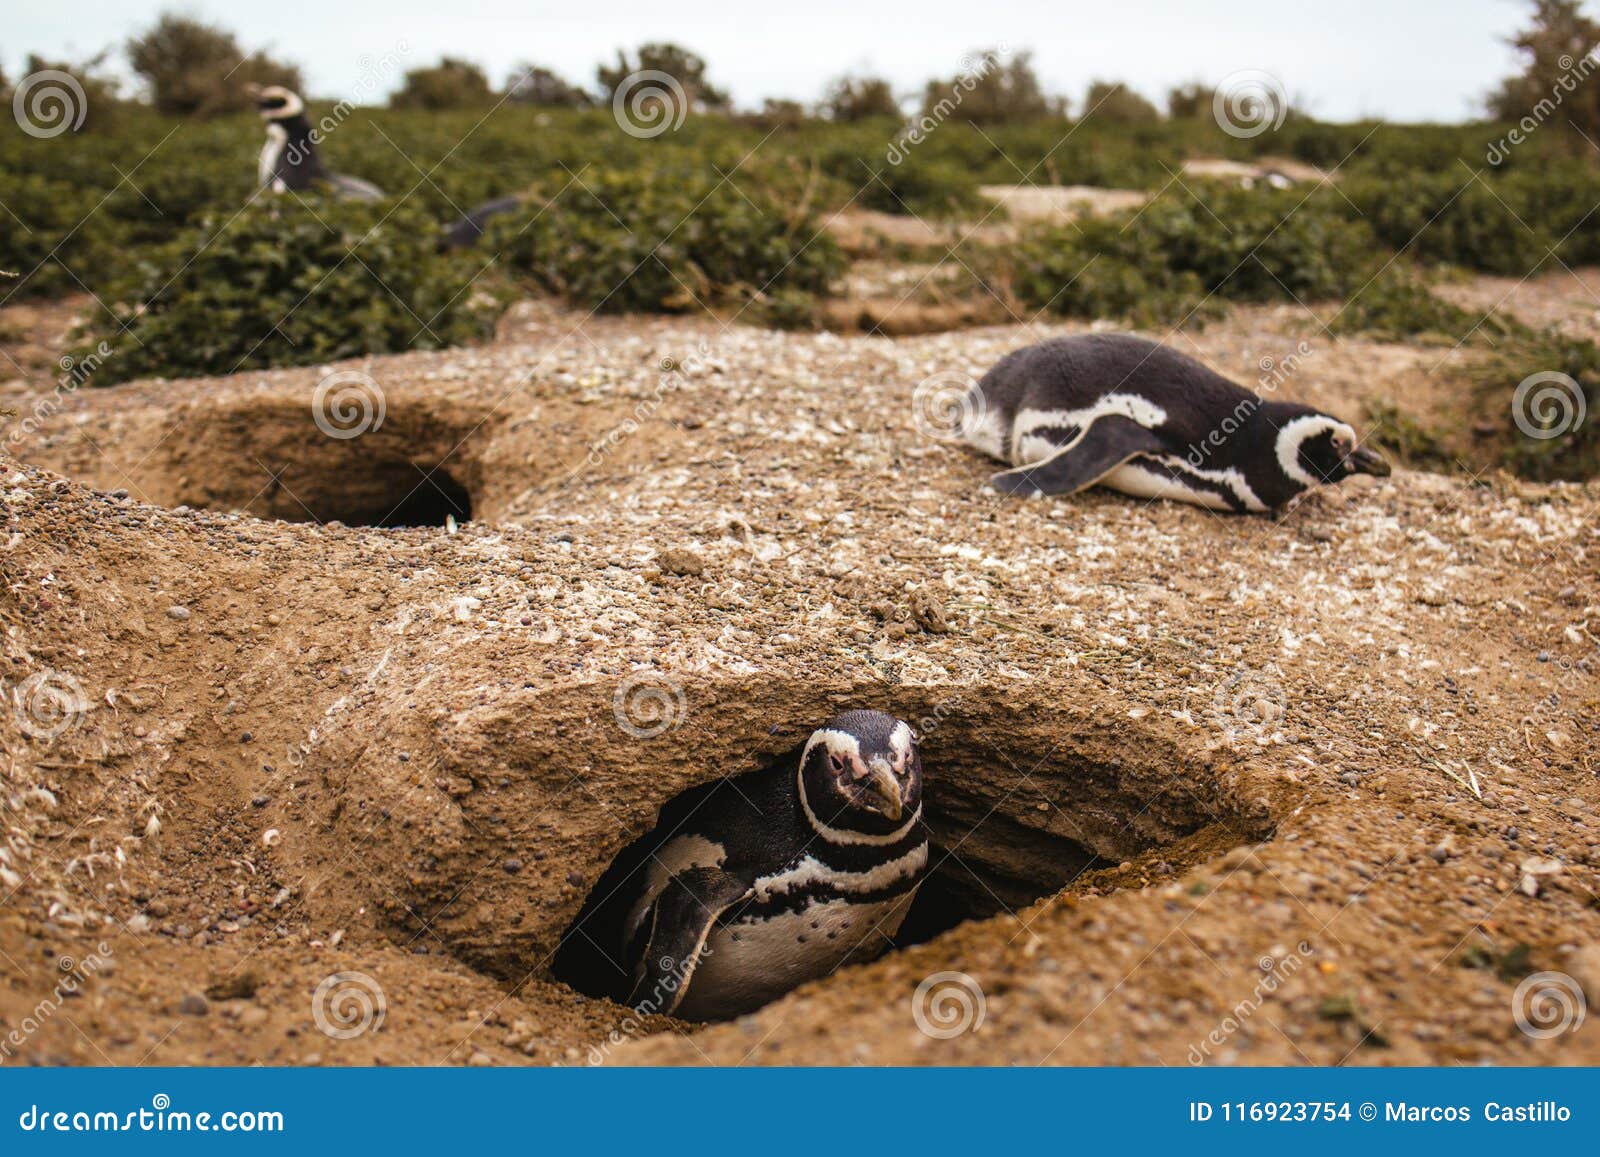 penguins in patagonia peninsula de valdes argentina, magellanic penguin